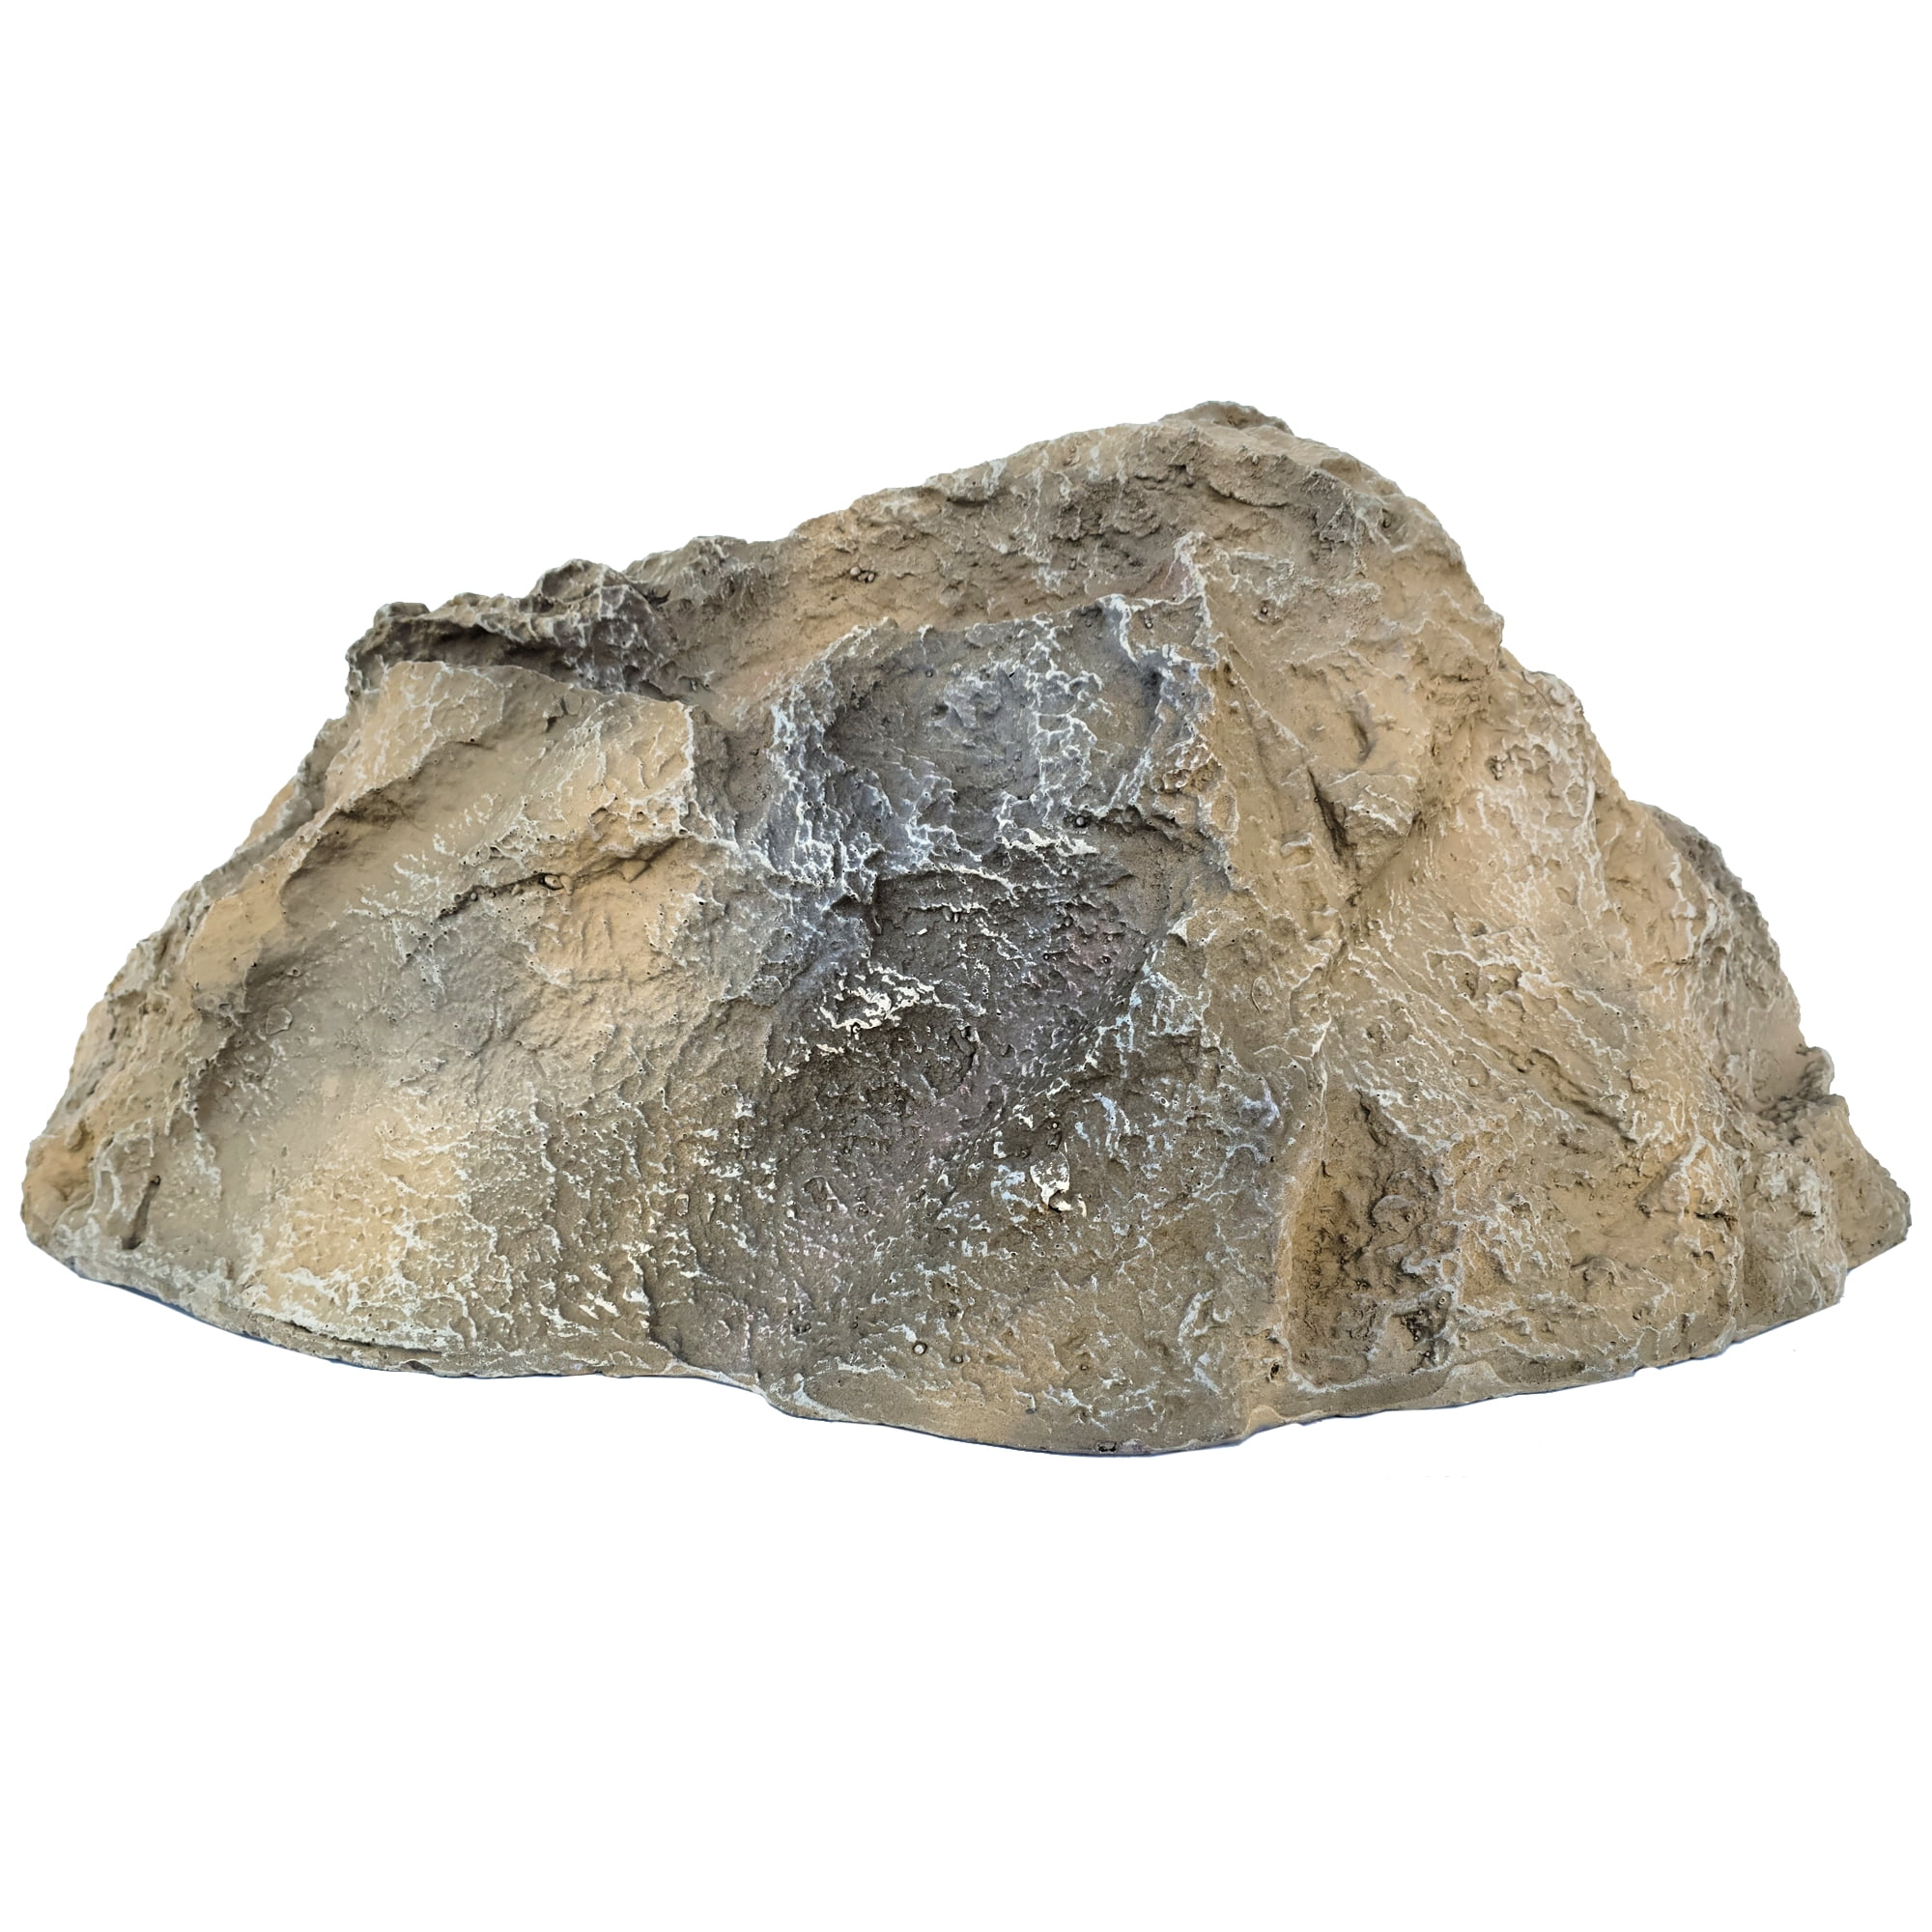 Backyard X-Scapes Artificial Boulder Fake Rock 13 H x 28 W x 30 L Large